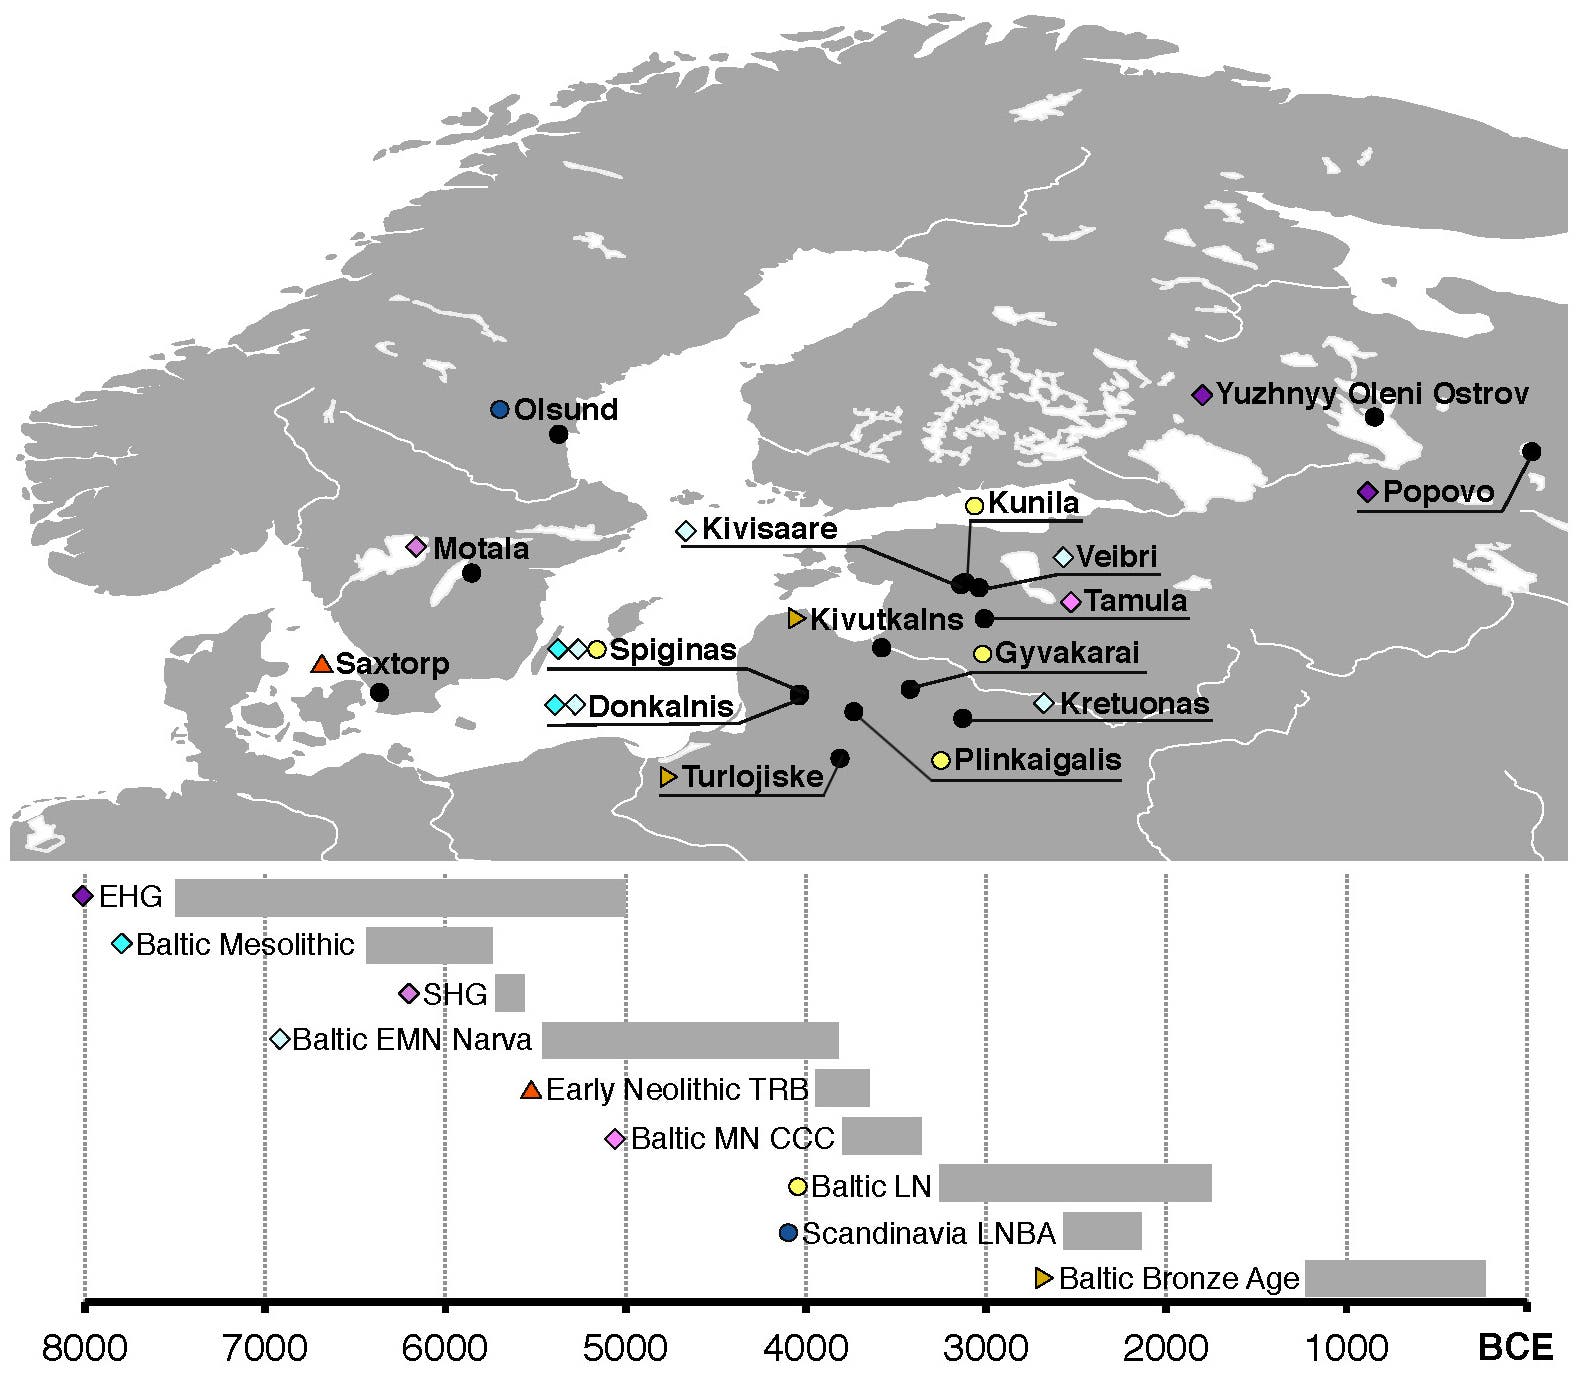 Landkarte und Timeline der Genome von frühen Siedlern im Norden und Nordosten Europas